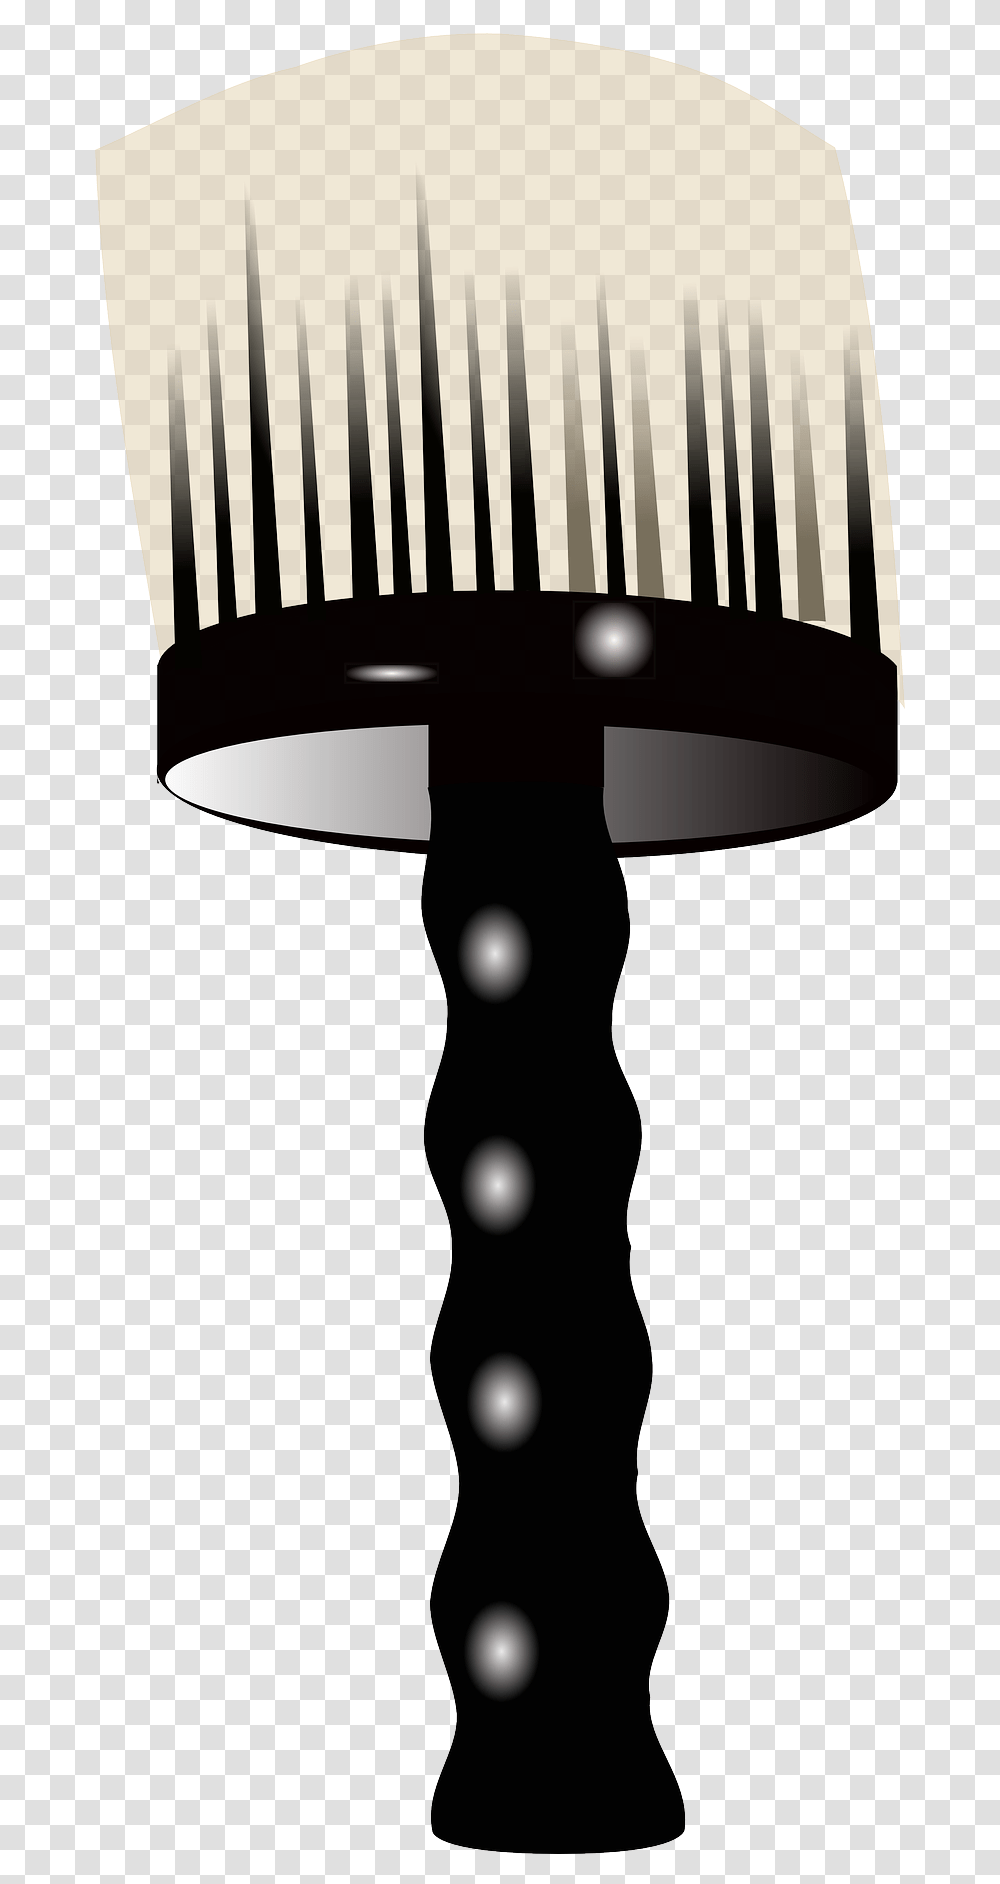 Barber Brush Drawing Paintbrush, Lamp, Lampshade, Table Lamp Transparent Png